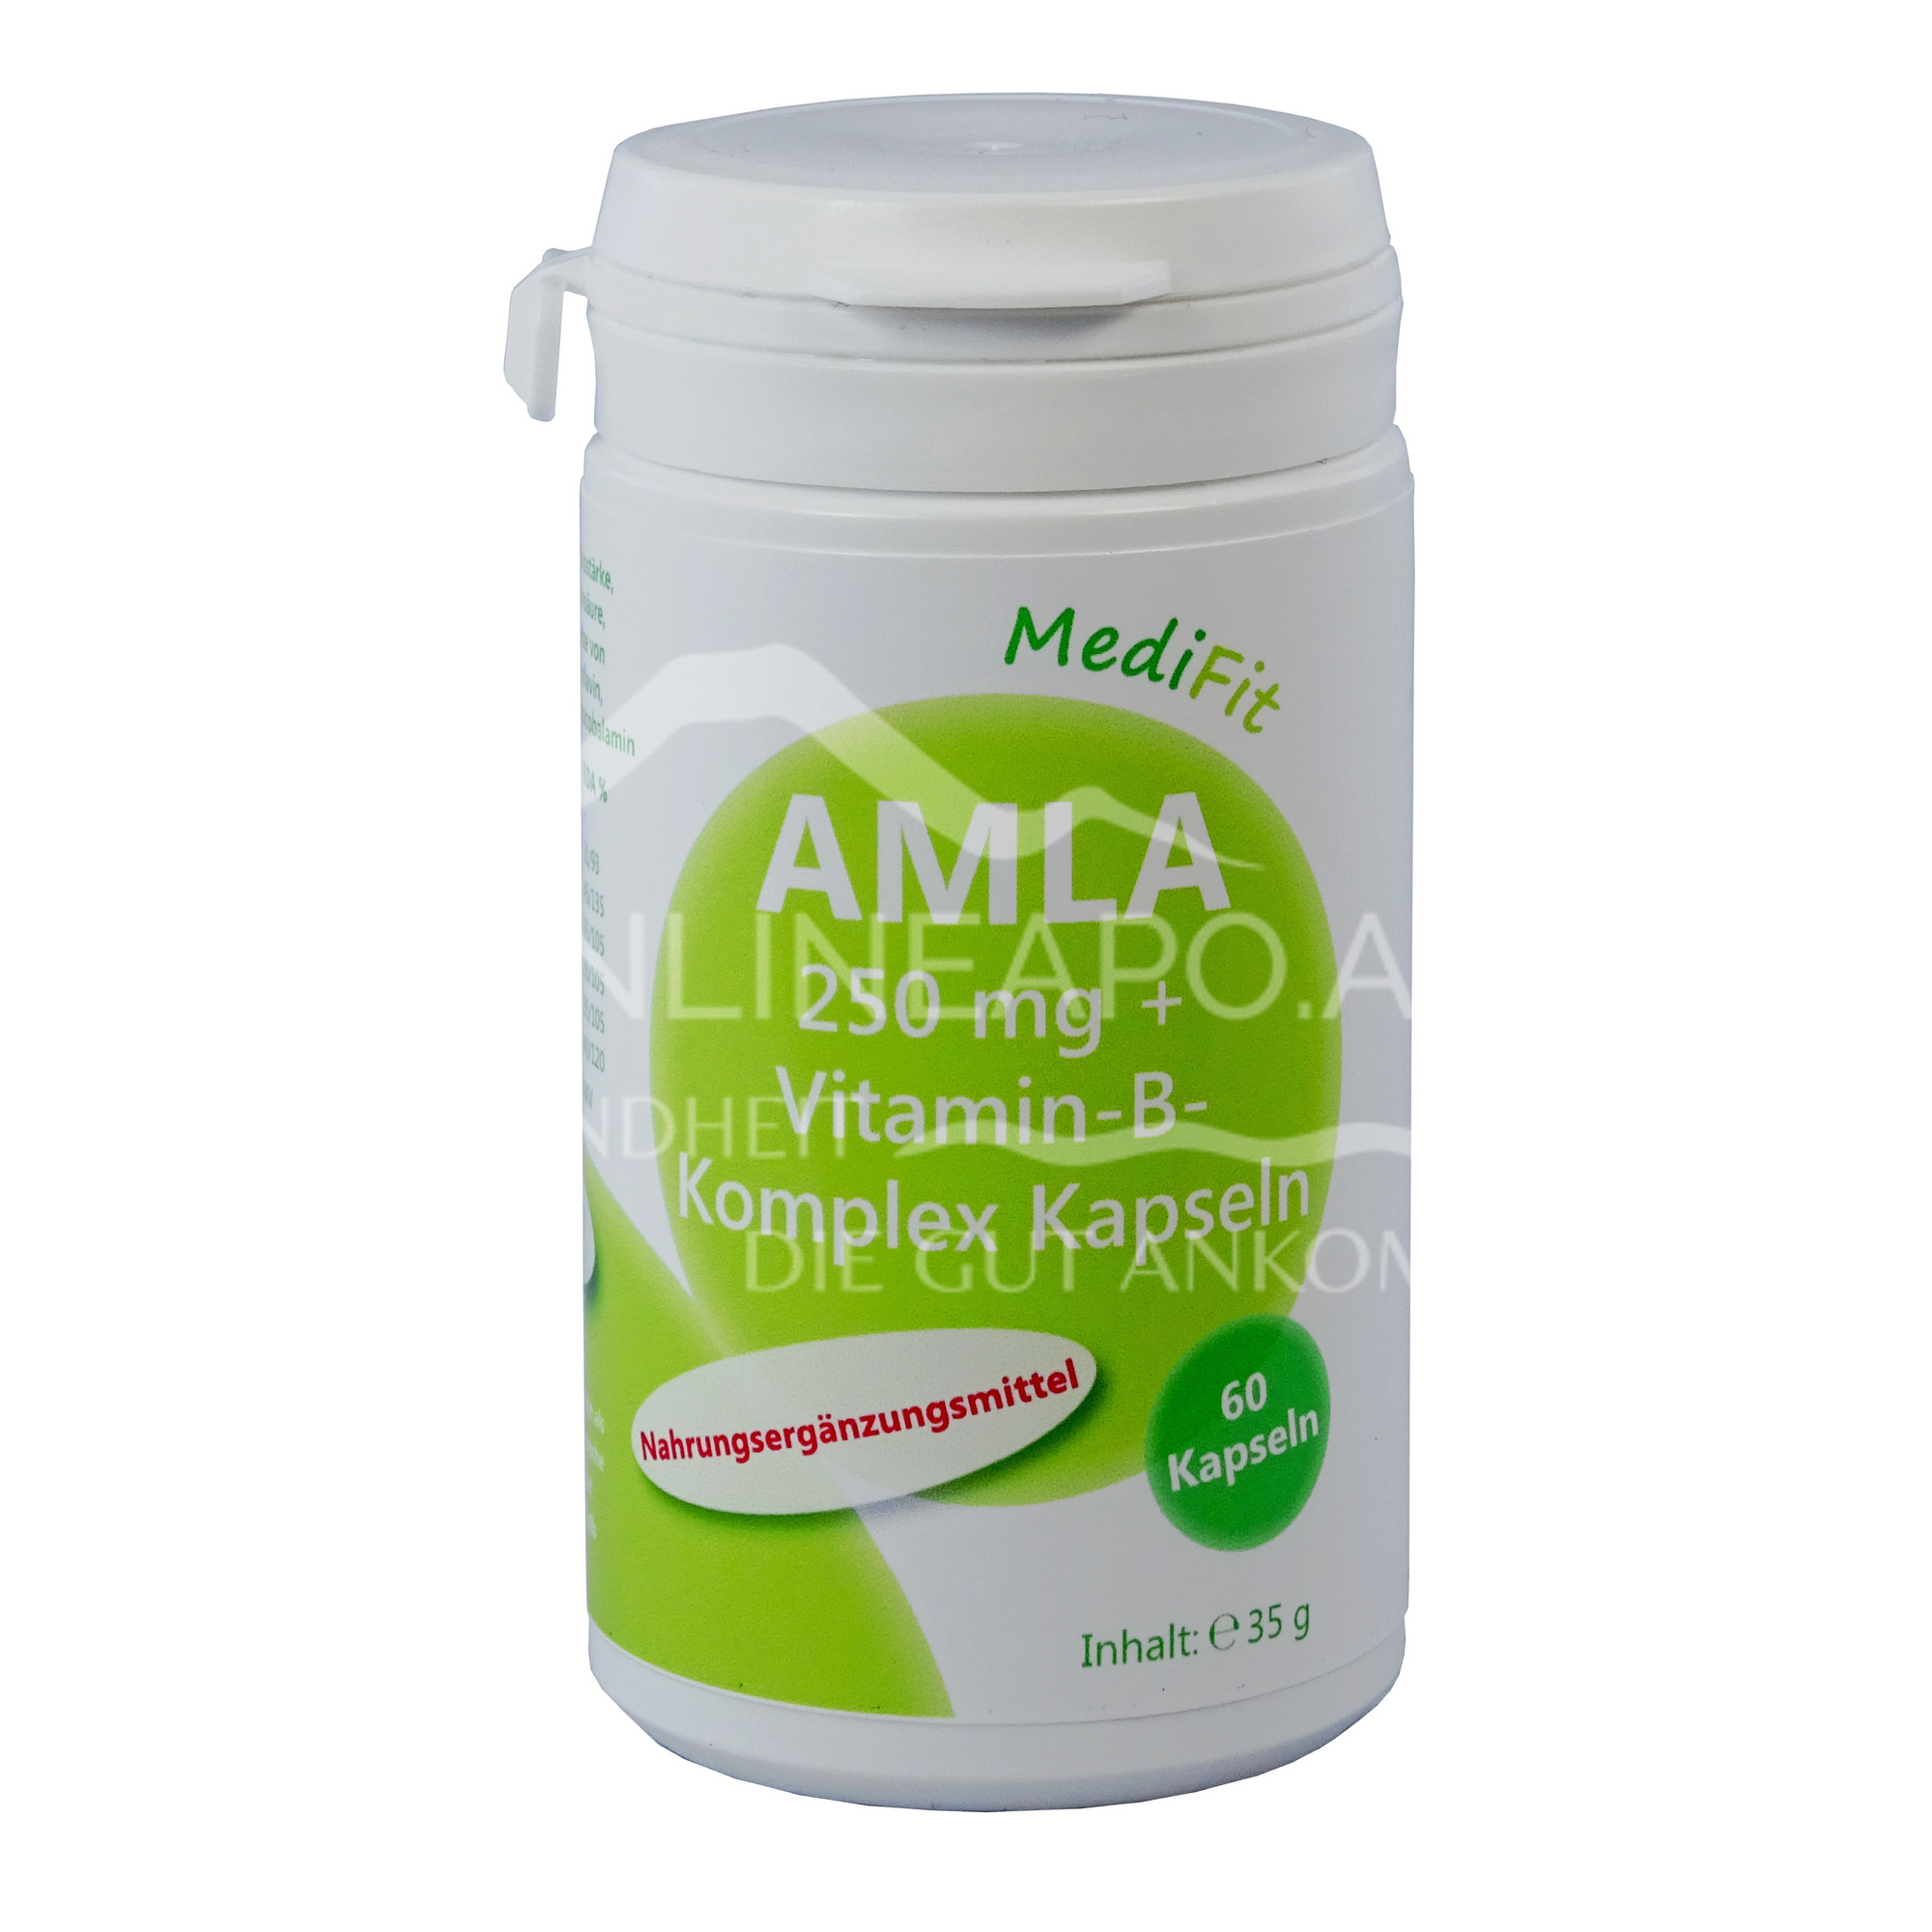 MediFit Amla 250 mg + Vitamin-B-Komplex Kapseln